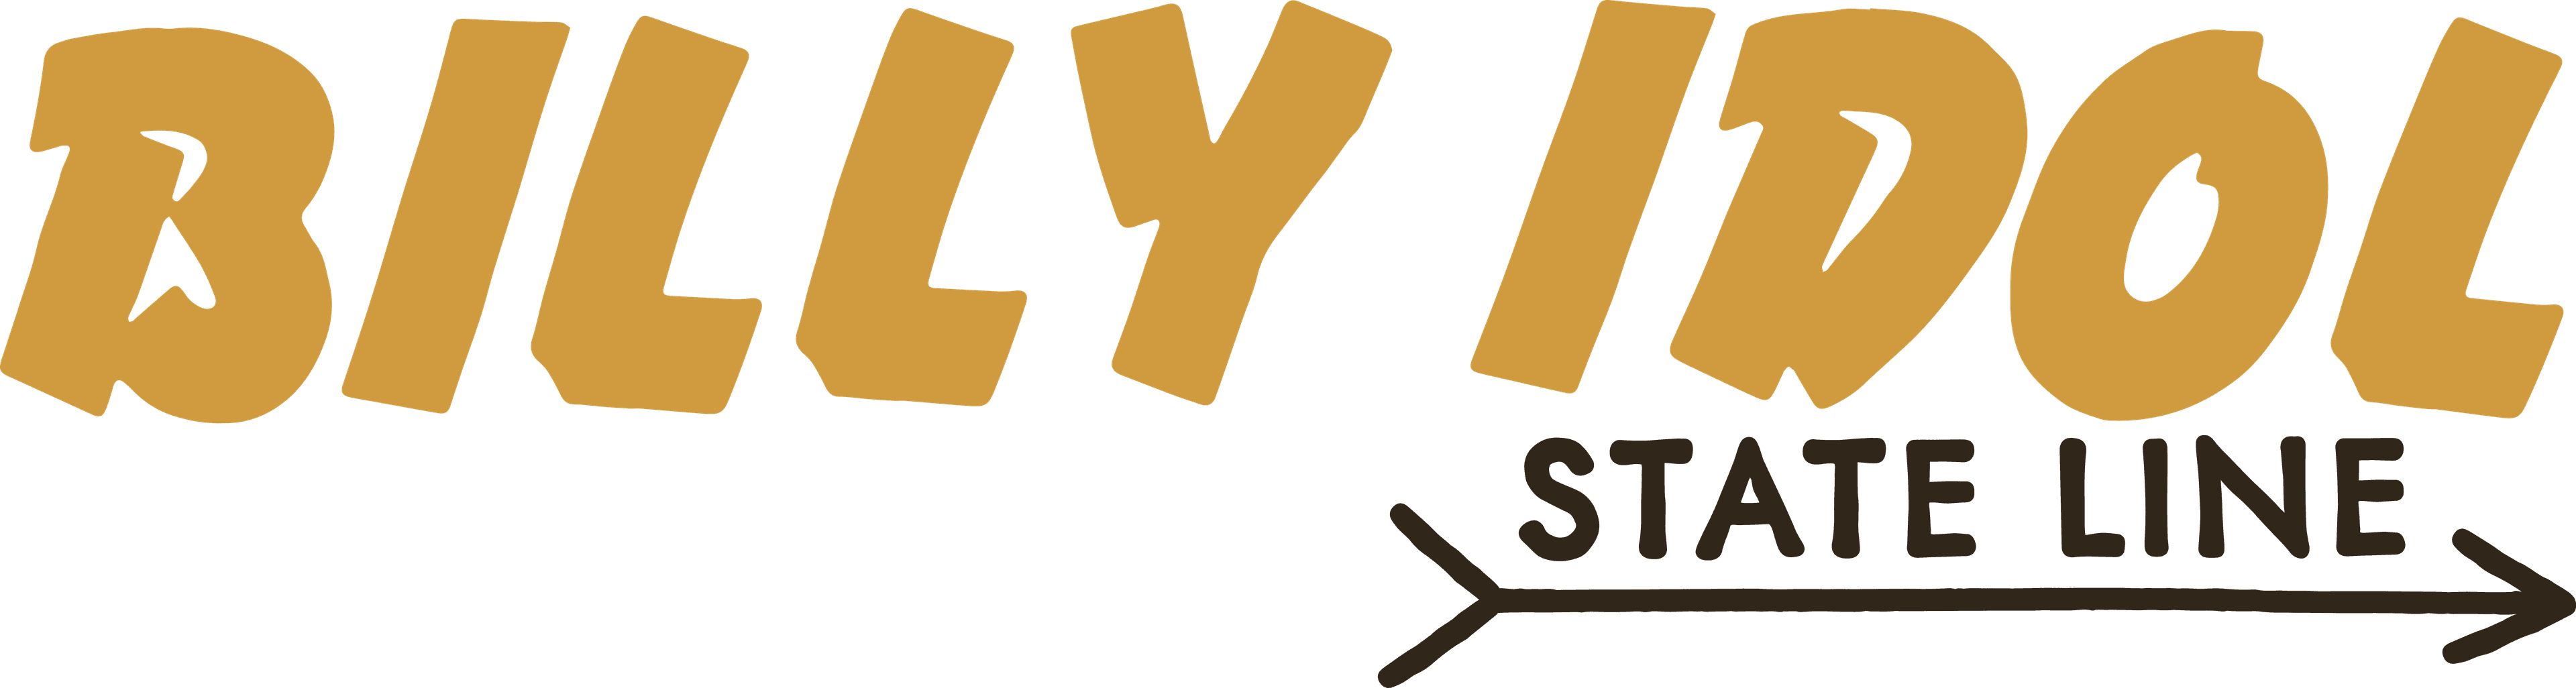 Billy Idol: State Line logo